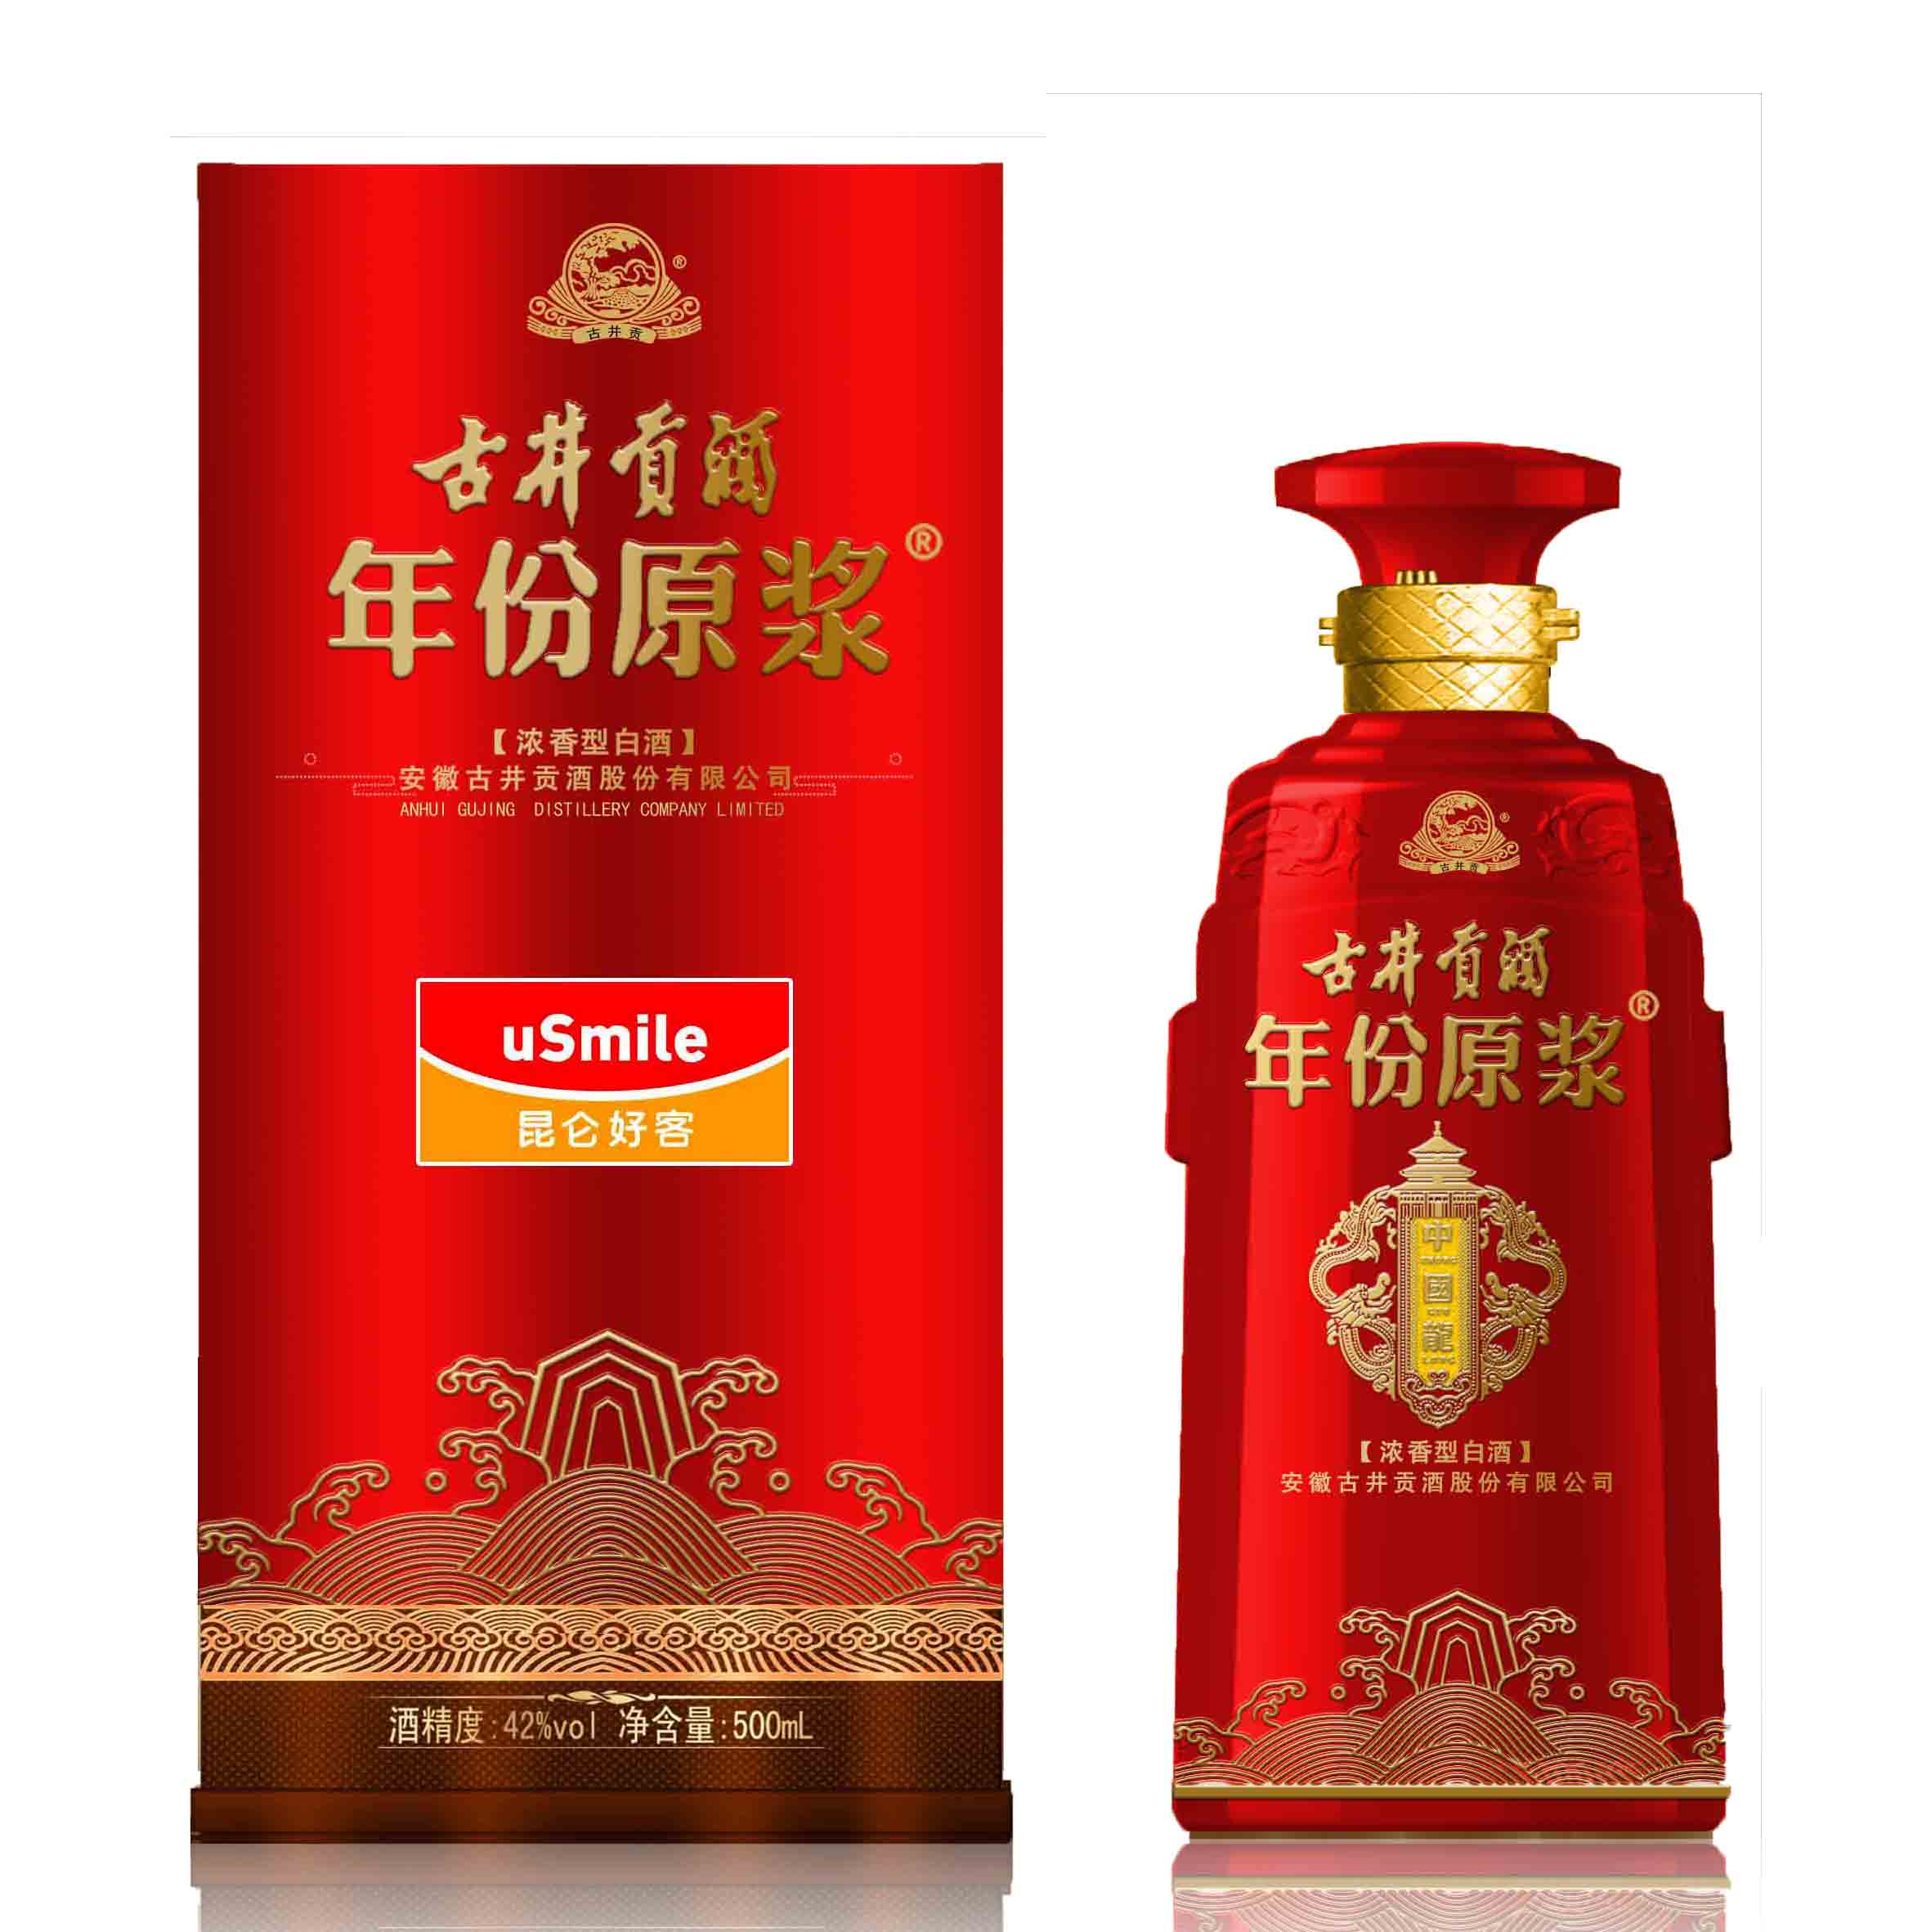 中国龙红中国龙蓝香型:浓香型 度数:42度,50度 容量:500ml二:古井贡酒